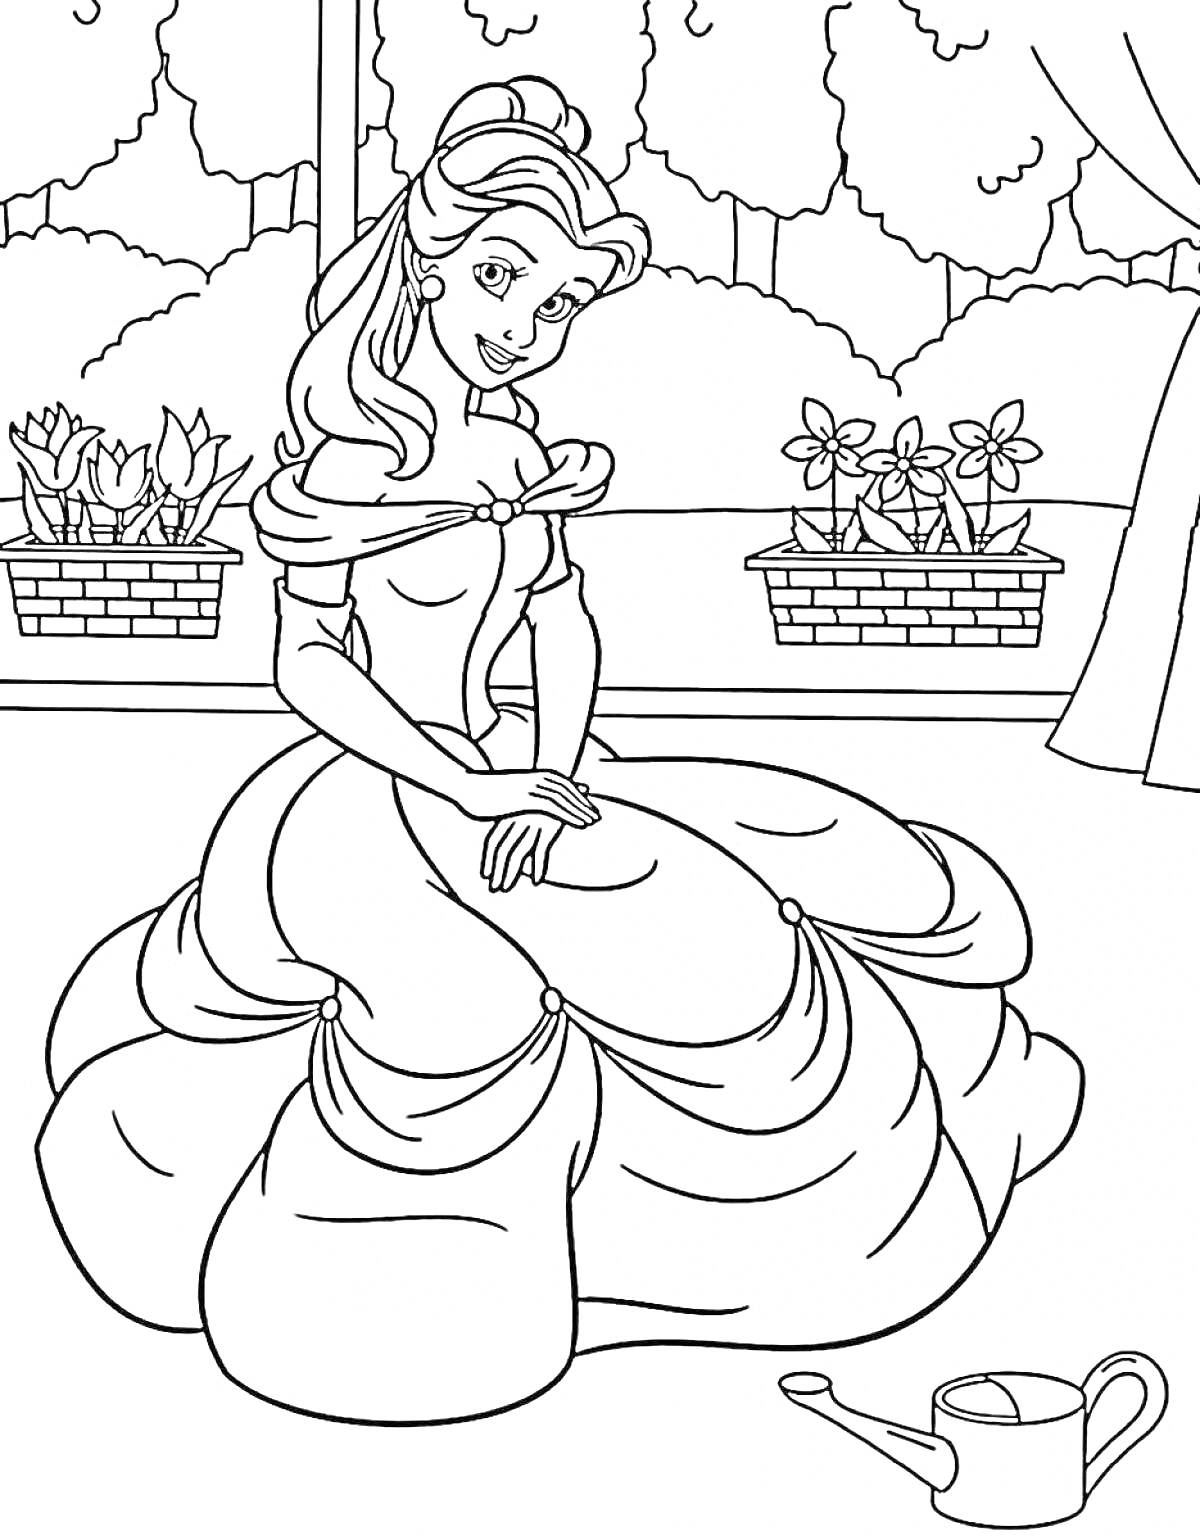 Раскраска Принцесса в длинном платье сидит в саду, на заднем плане два горшка с цветами, за окном деревья, справа занавеска, на полу лейка.